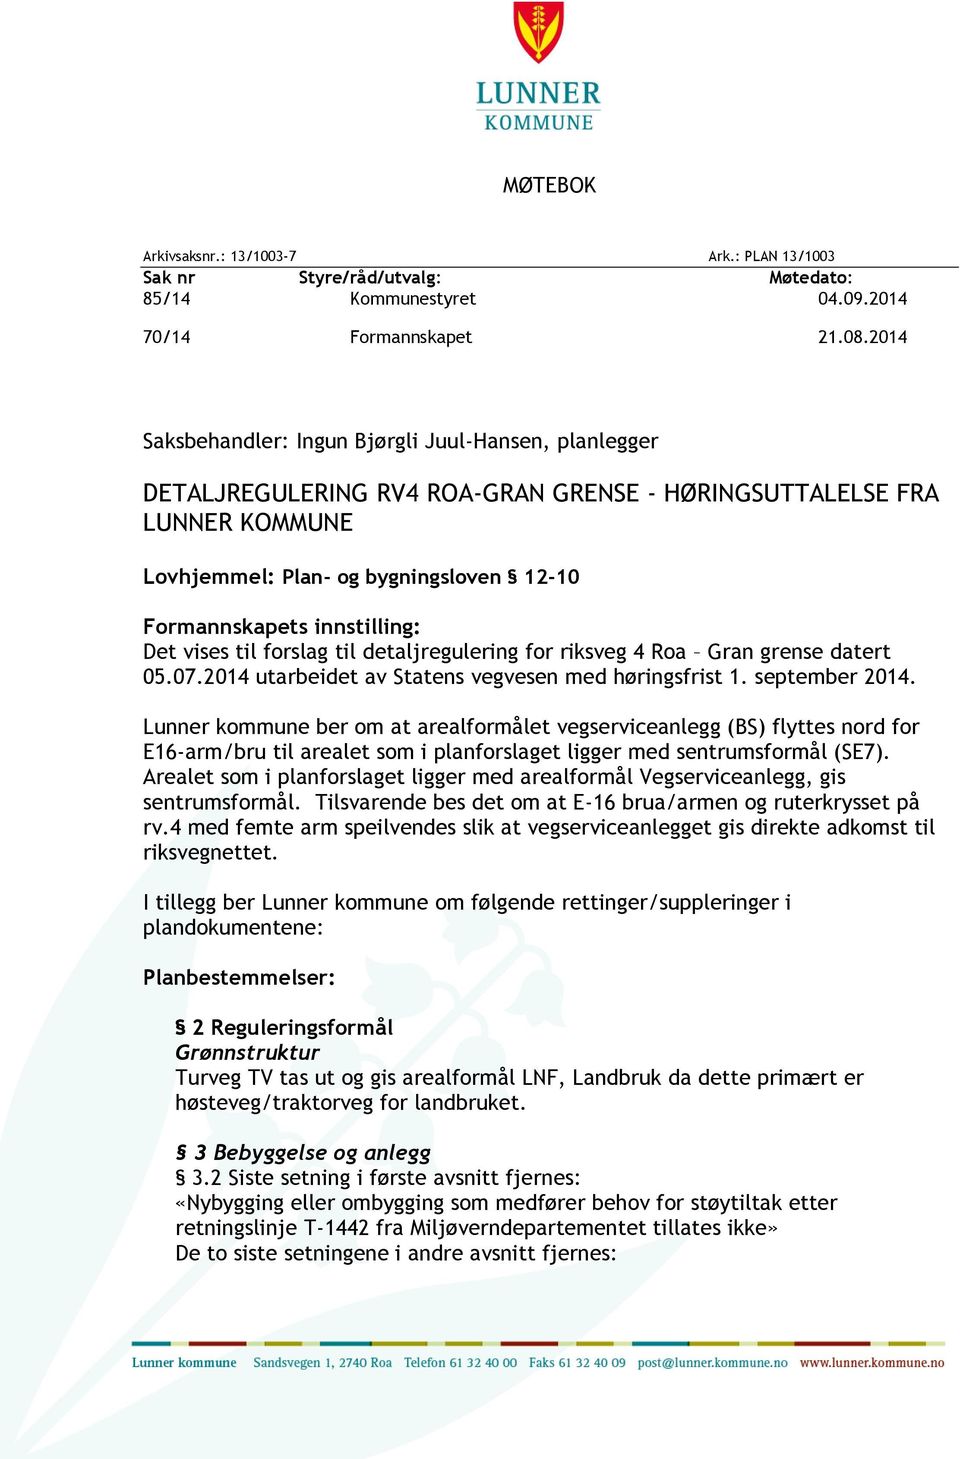 innstilling: Det vises til forslag til detaljregulering for riksveg 4 Roa Gran grense datert 05.07.2014 utarbeidet av Statens vegvesen med høringsfrist 1. september 2014.